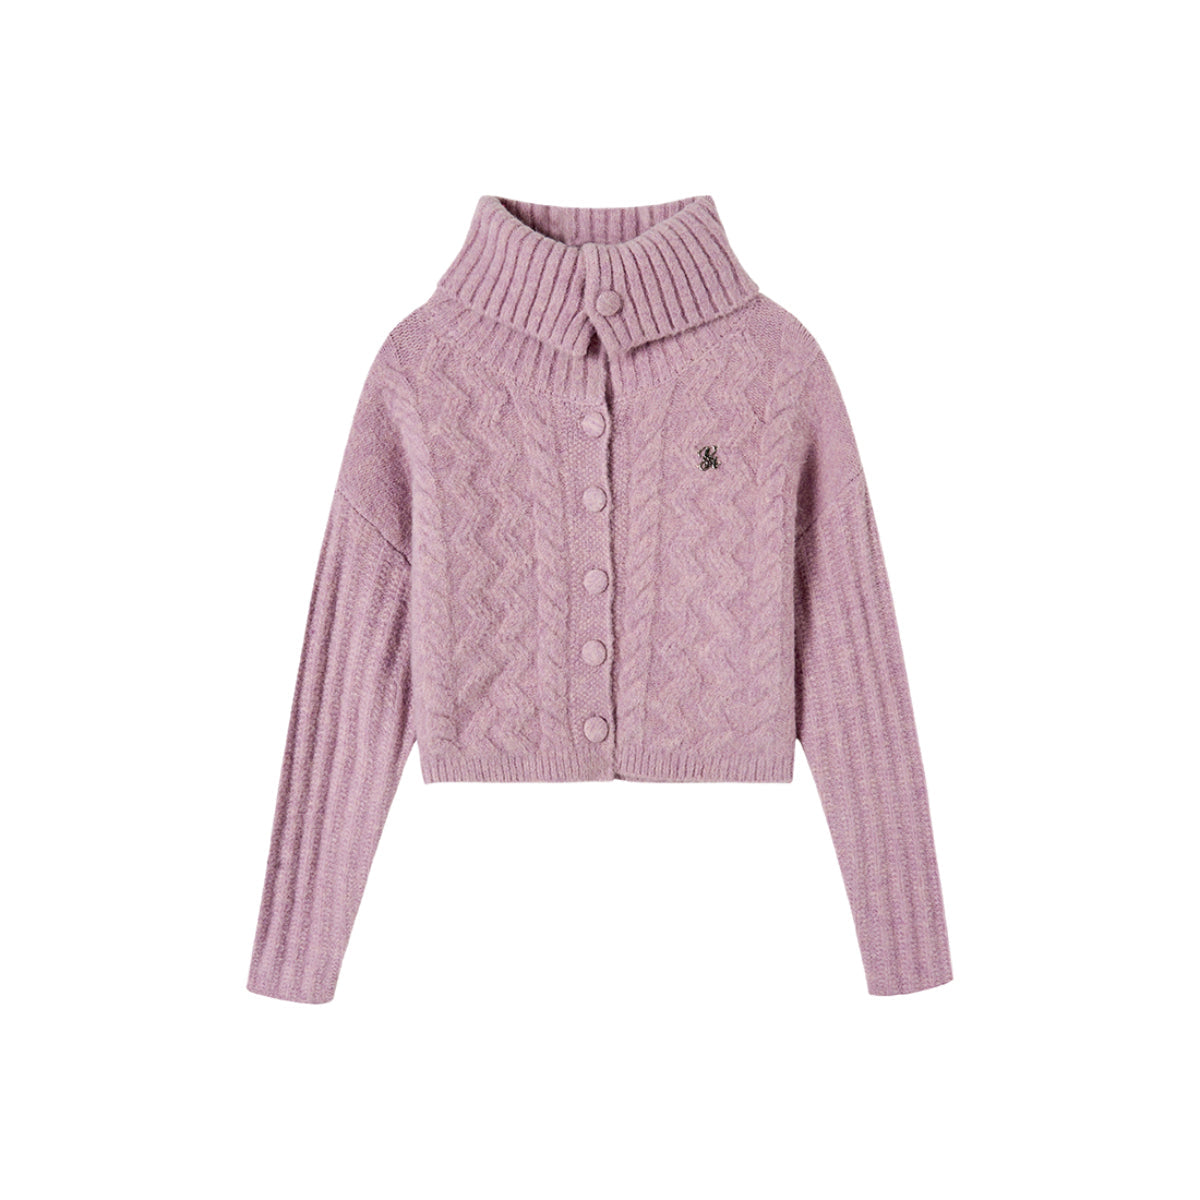 Pink Twisted Wool Knit Sweater - chiclara